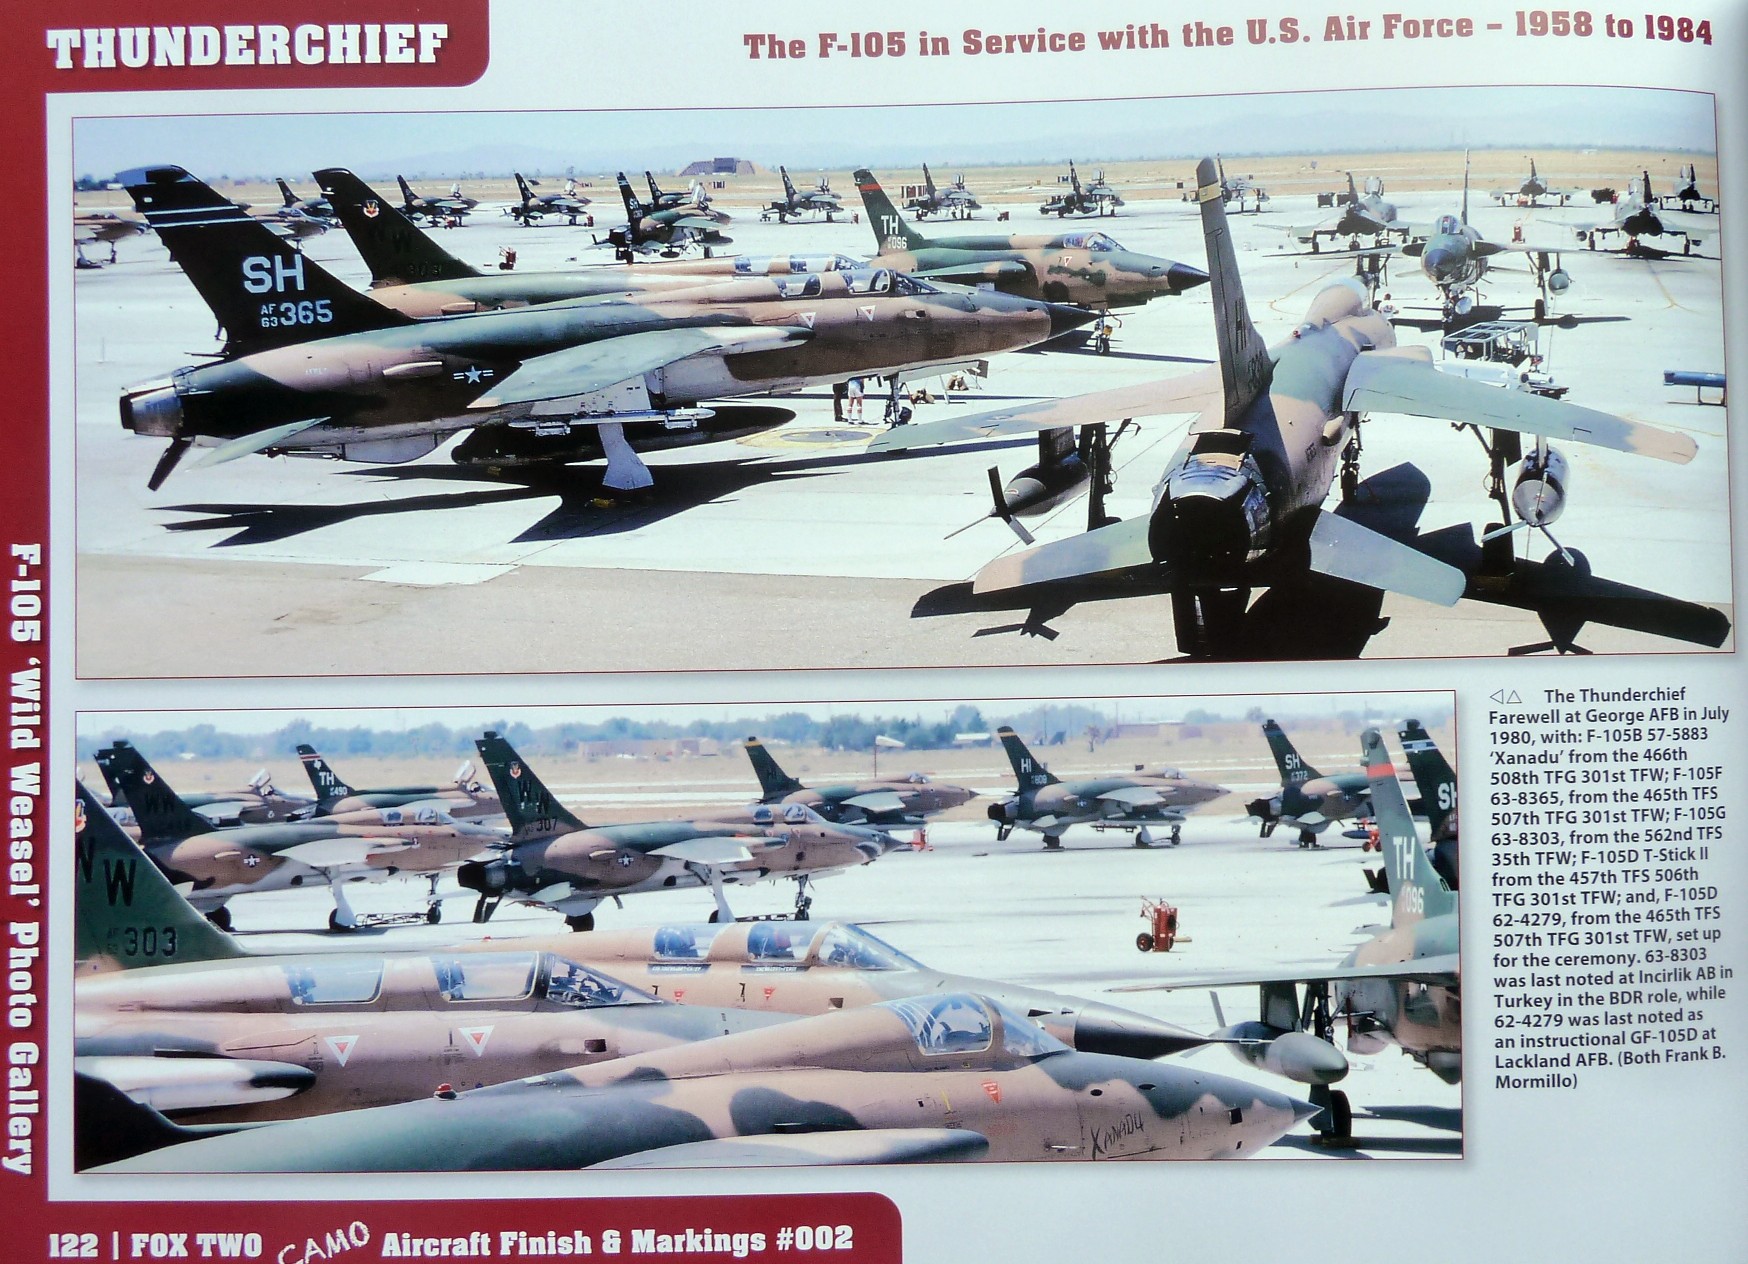  - Fox Two Camo - Republic F-105 Thunderchief